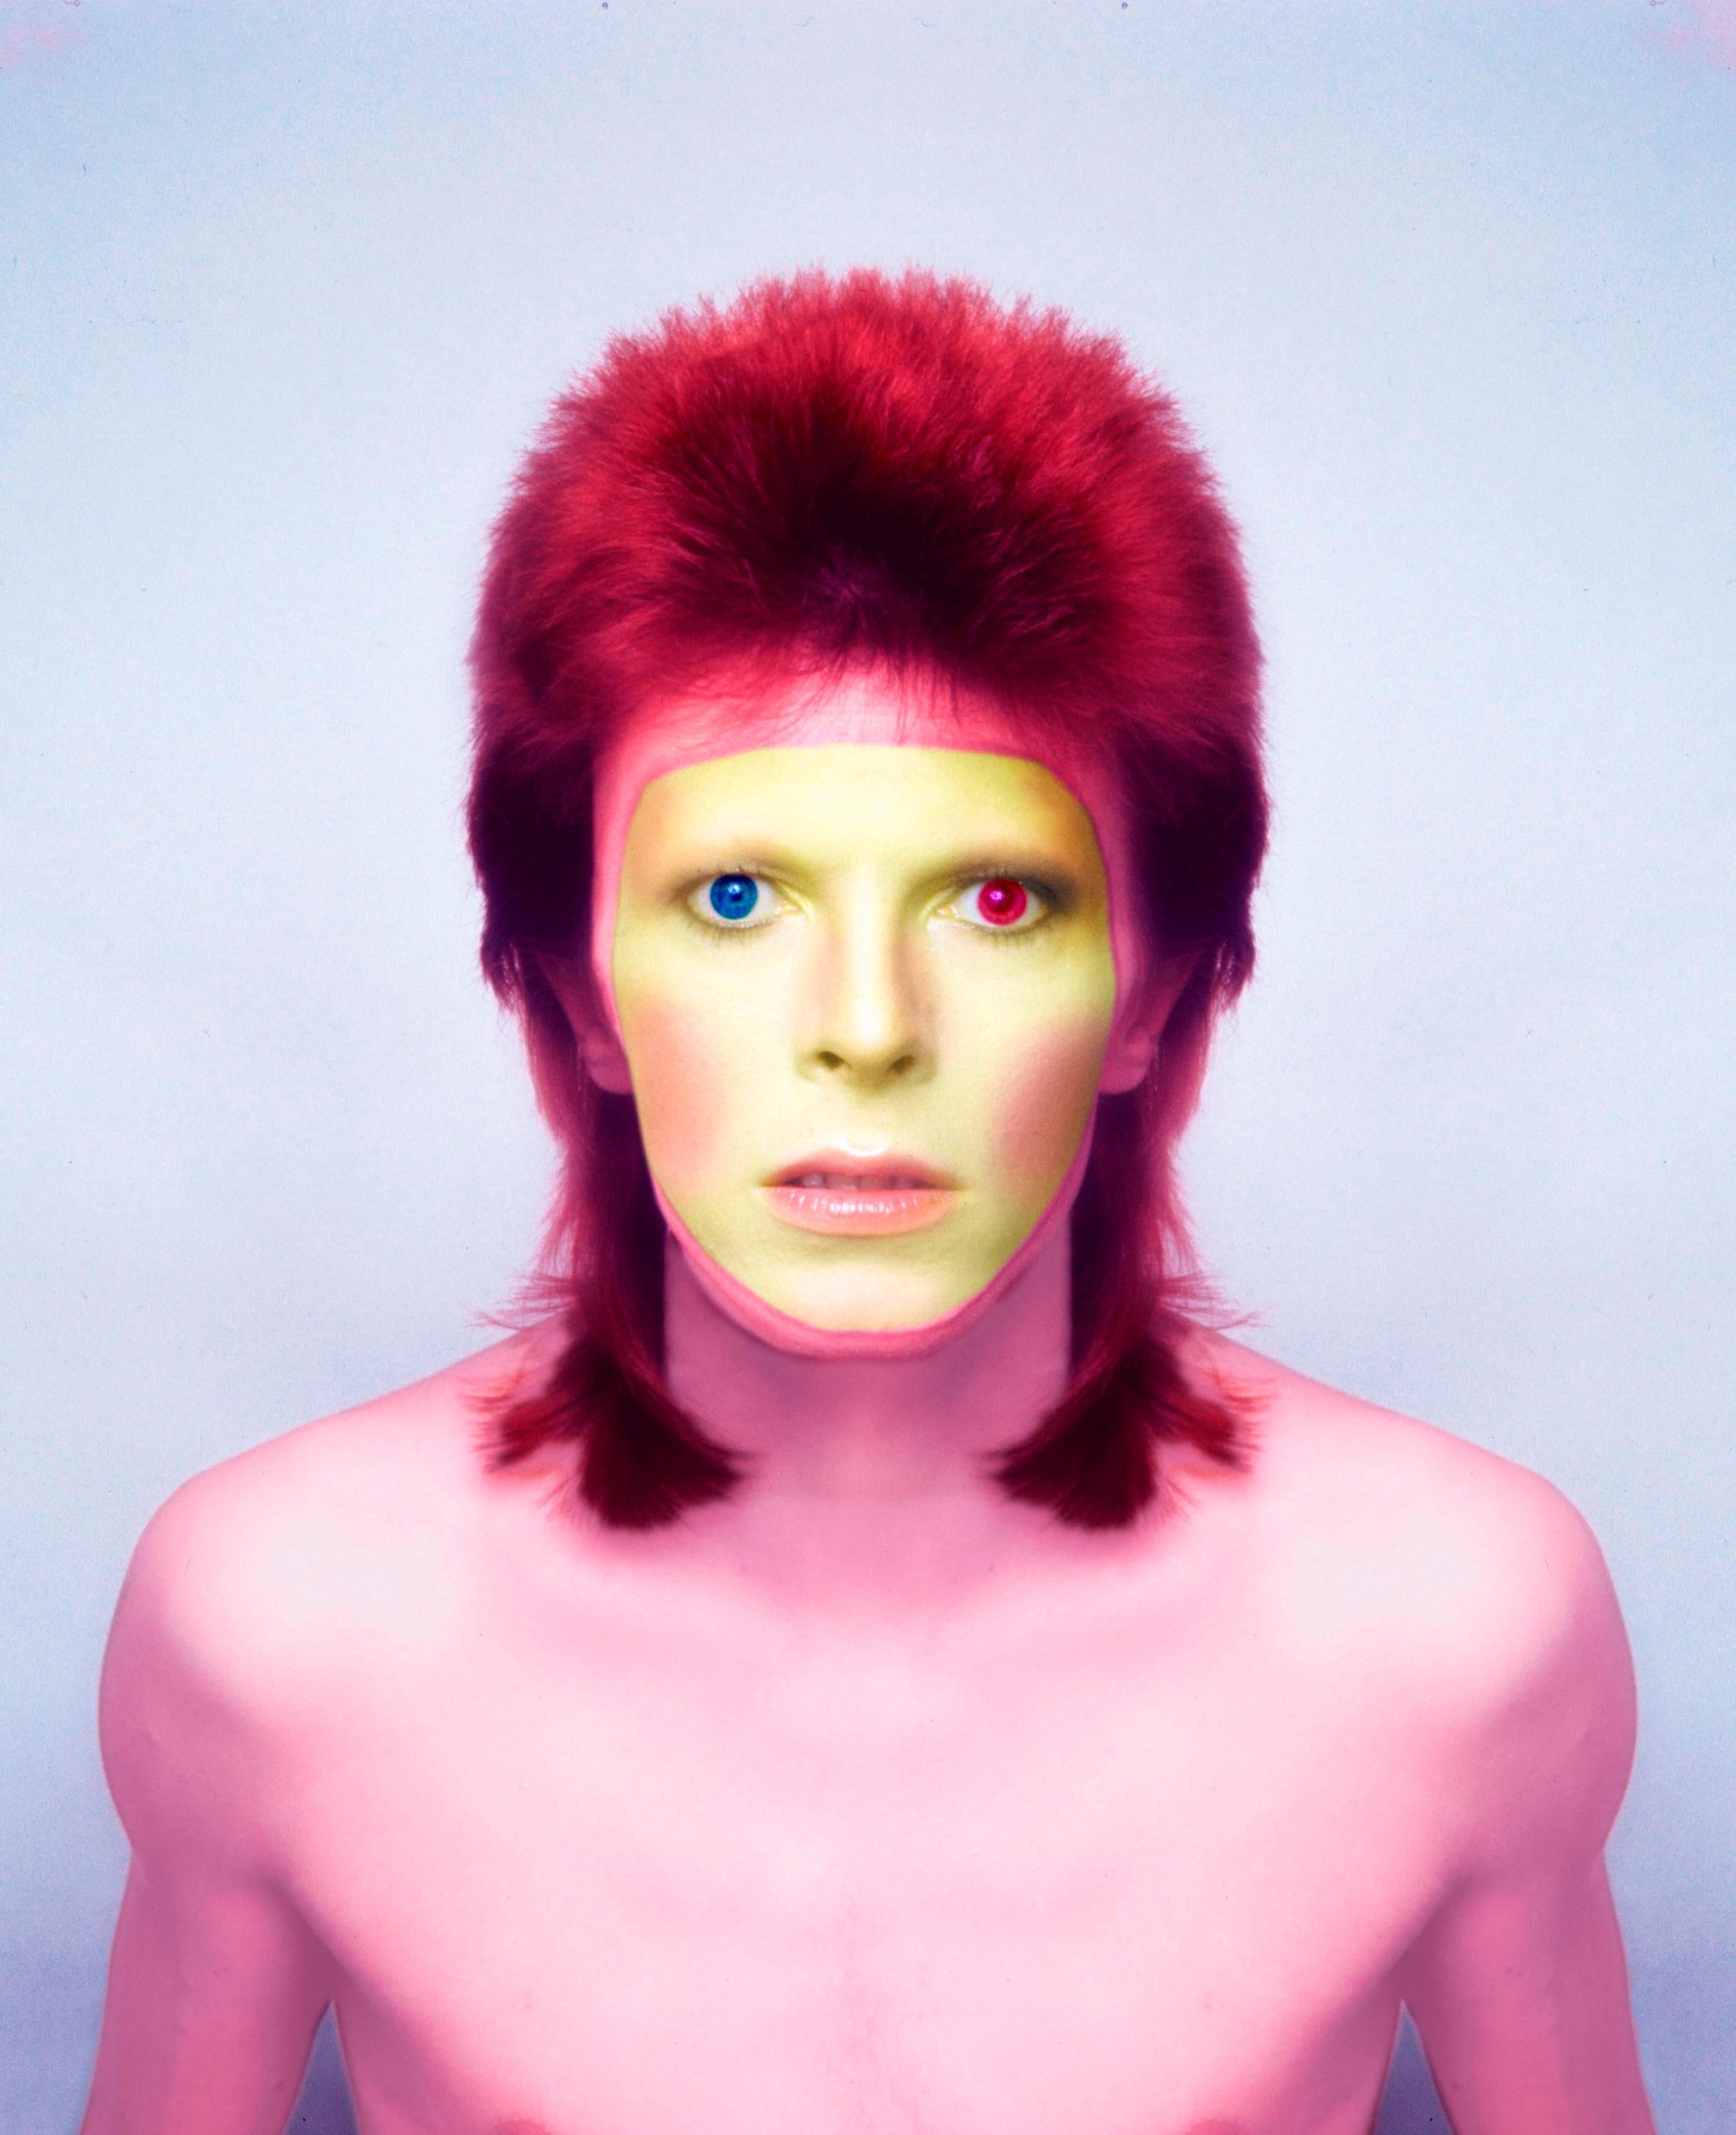 David Bowie "Pin Ups"